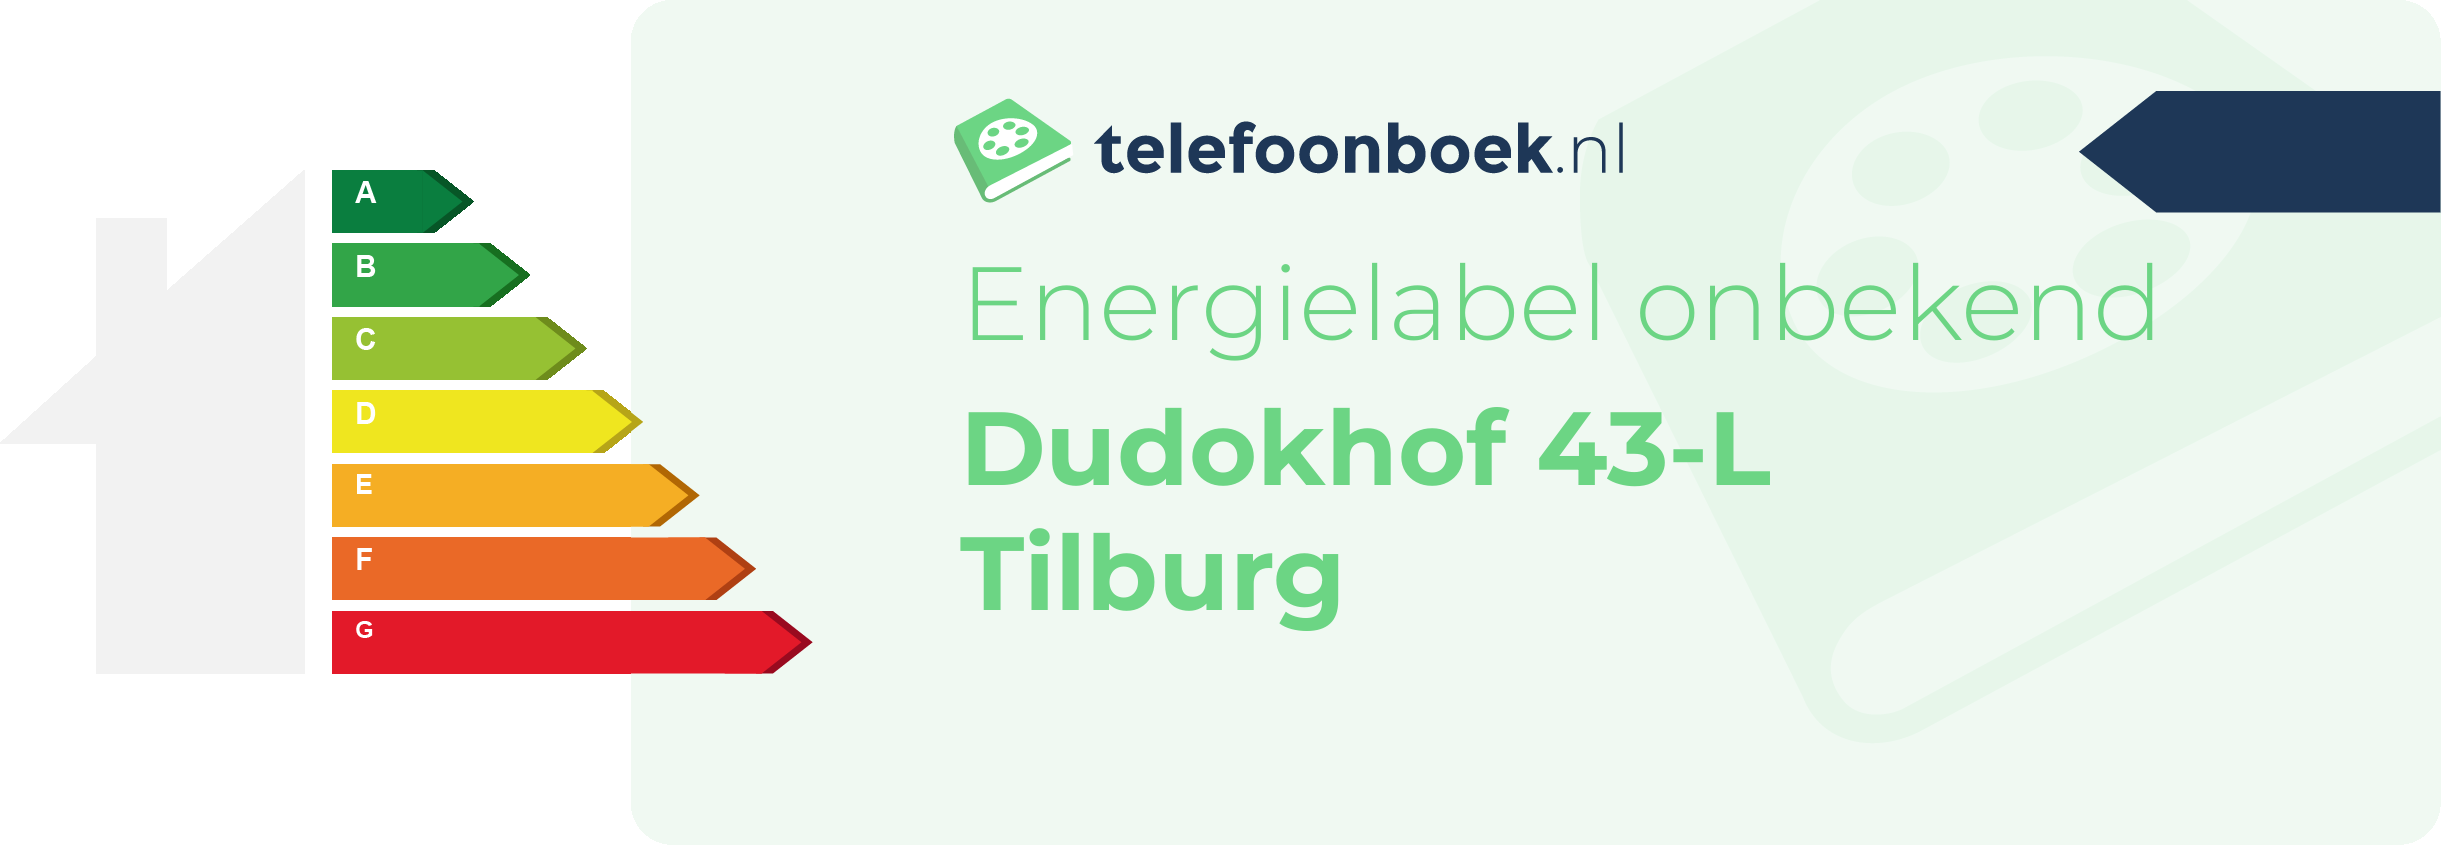 Energielabel Dudokhof 43-L Tilburg